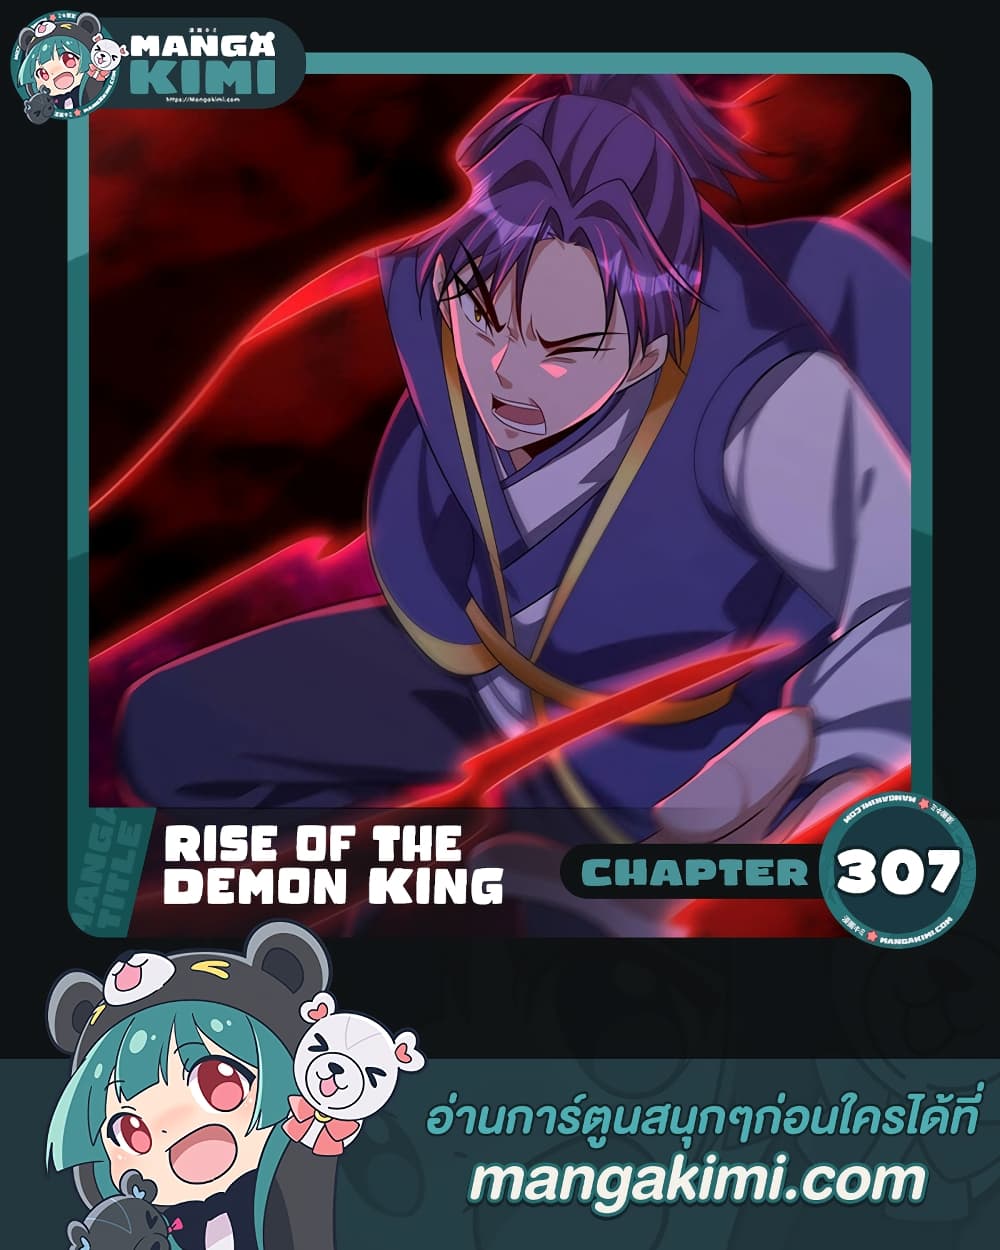 Rise of The Demon King รุ่งอรุณแห่งราชาปีศาจ 307-307